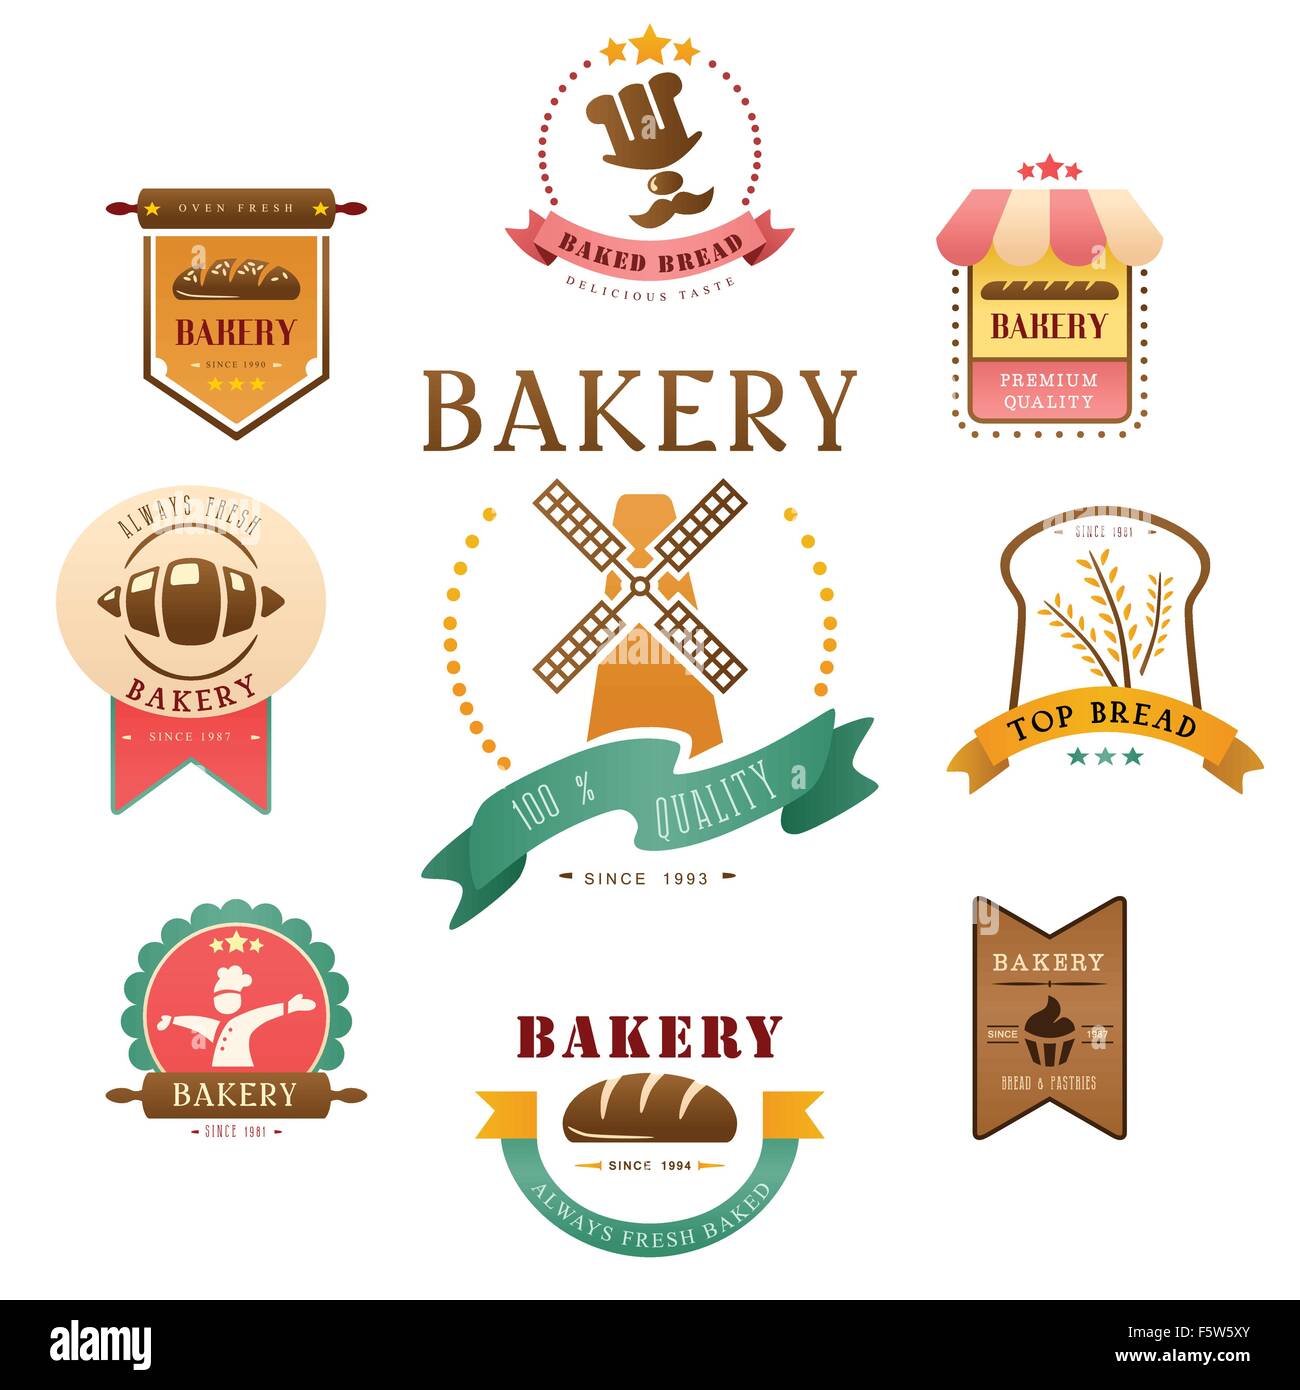 Eine Vektor-Illustration von Bäckerei-Label-design Stock Vektor